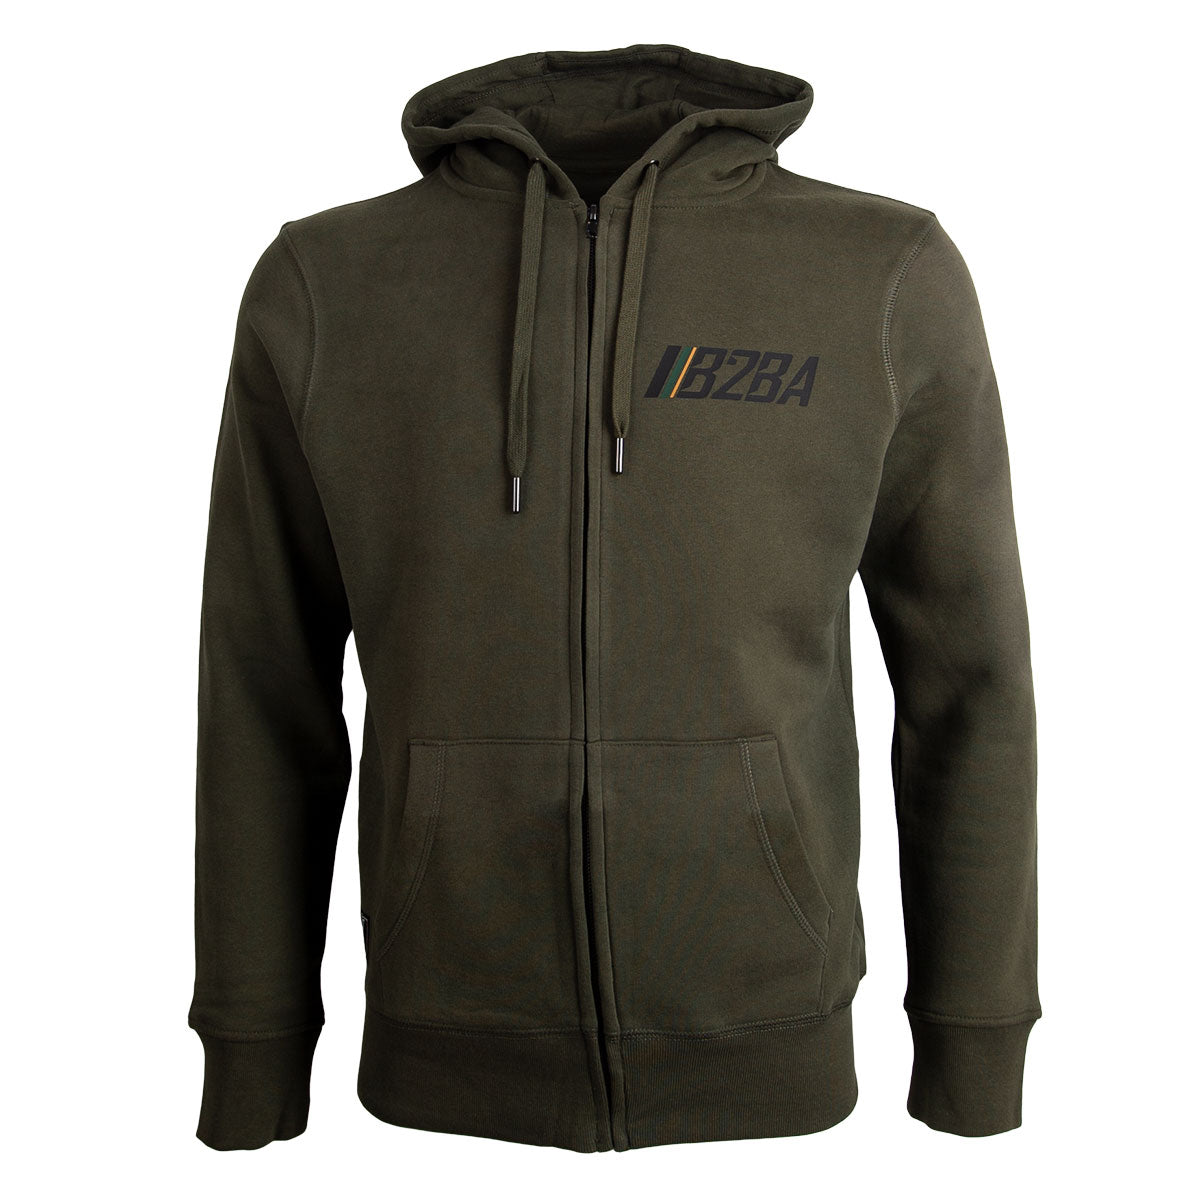 US21 Zipper Olive - B2BA Clothing olive / XS